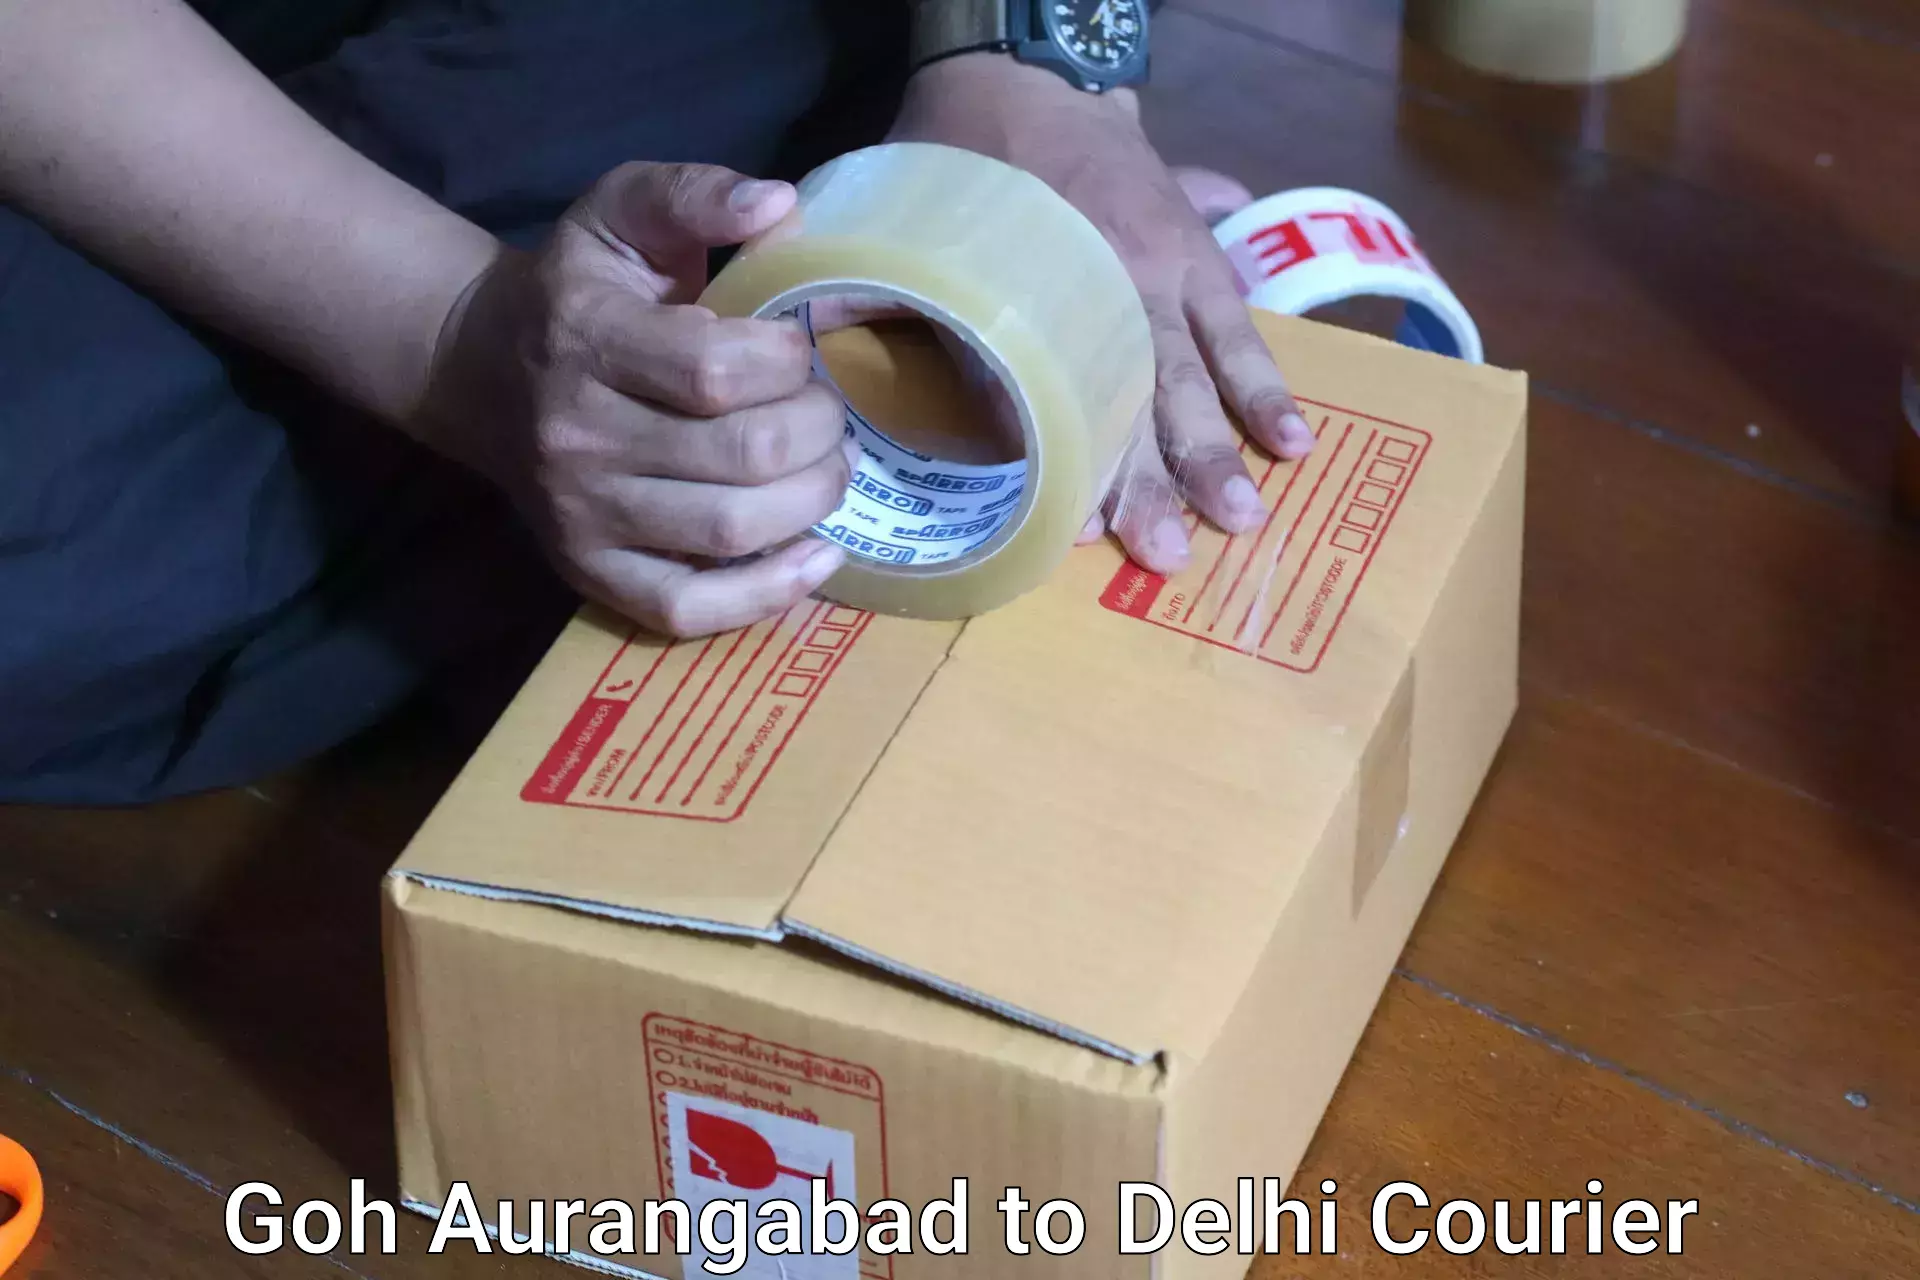 Luggage forwarding service Goh Aurangabad to East Delhi